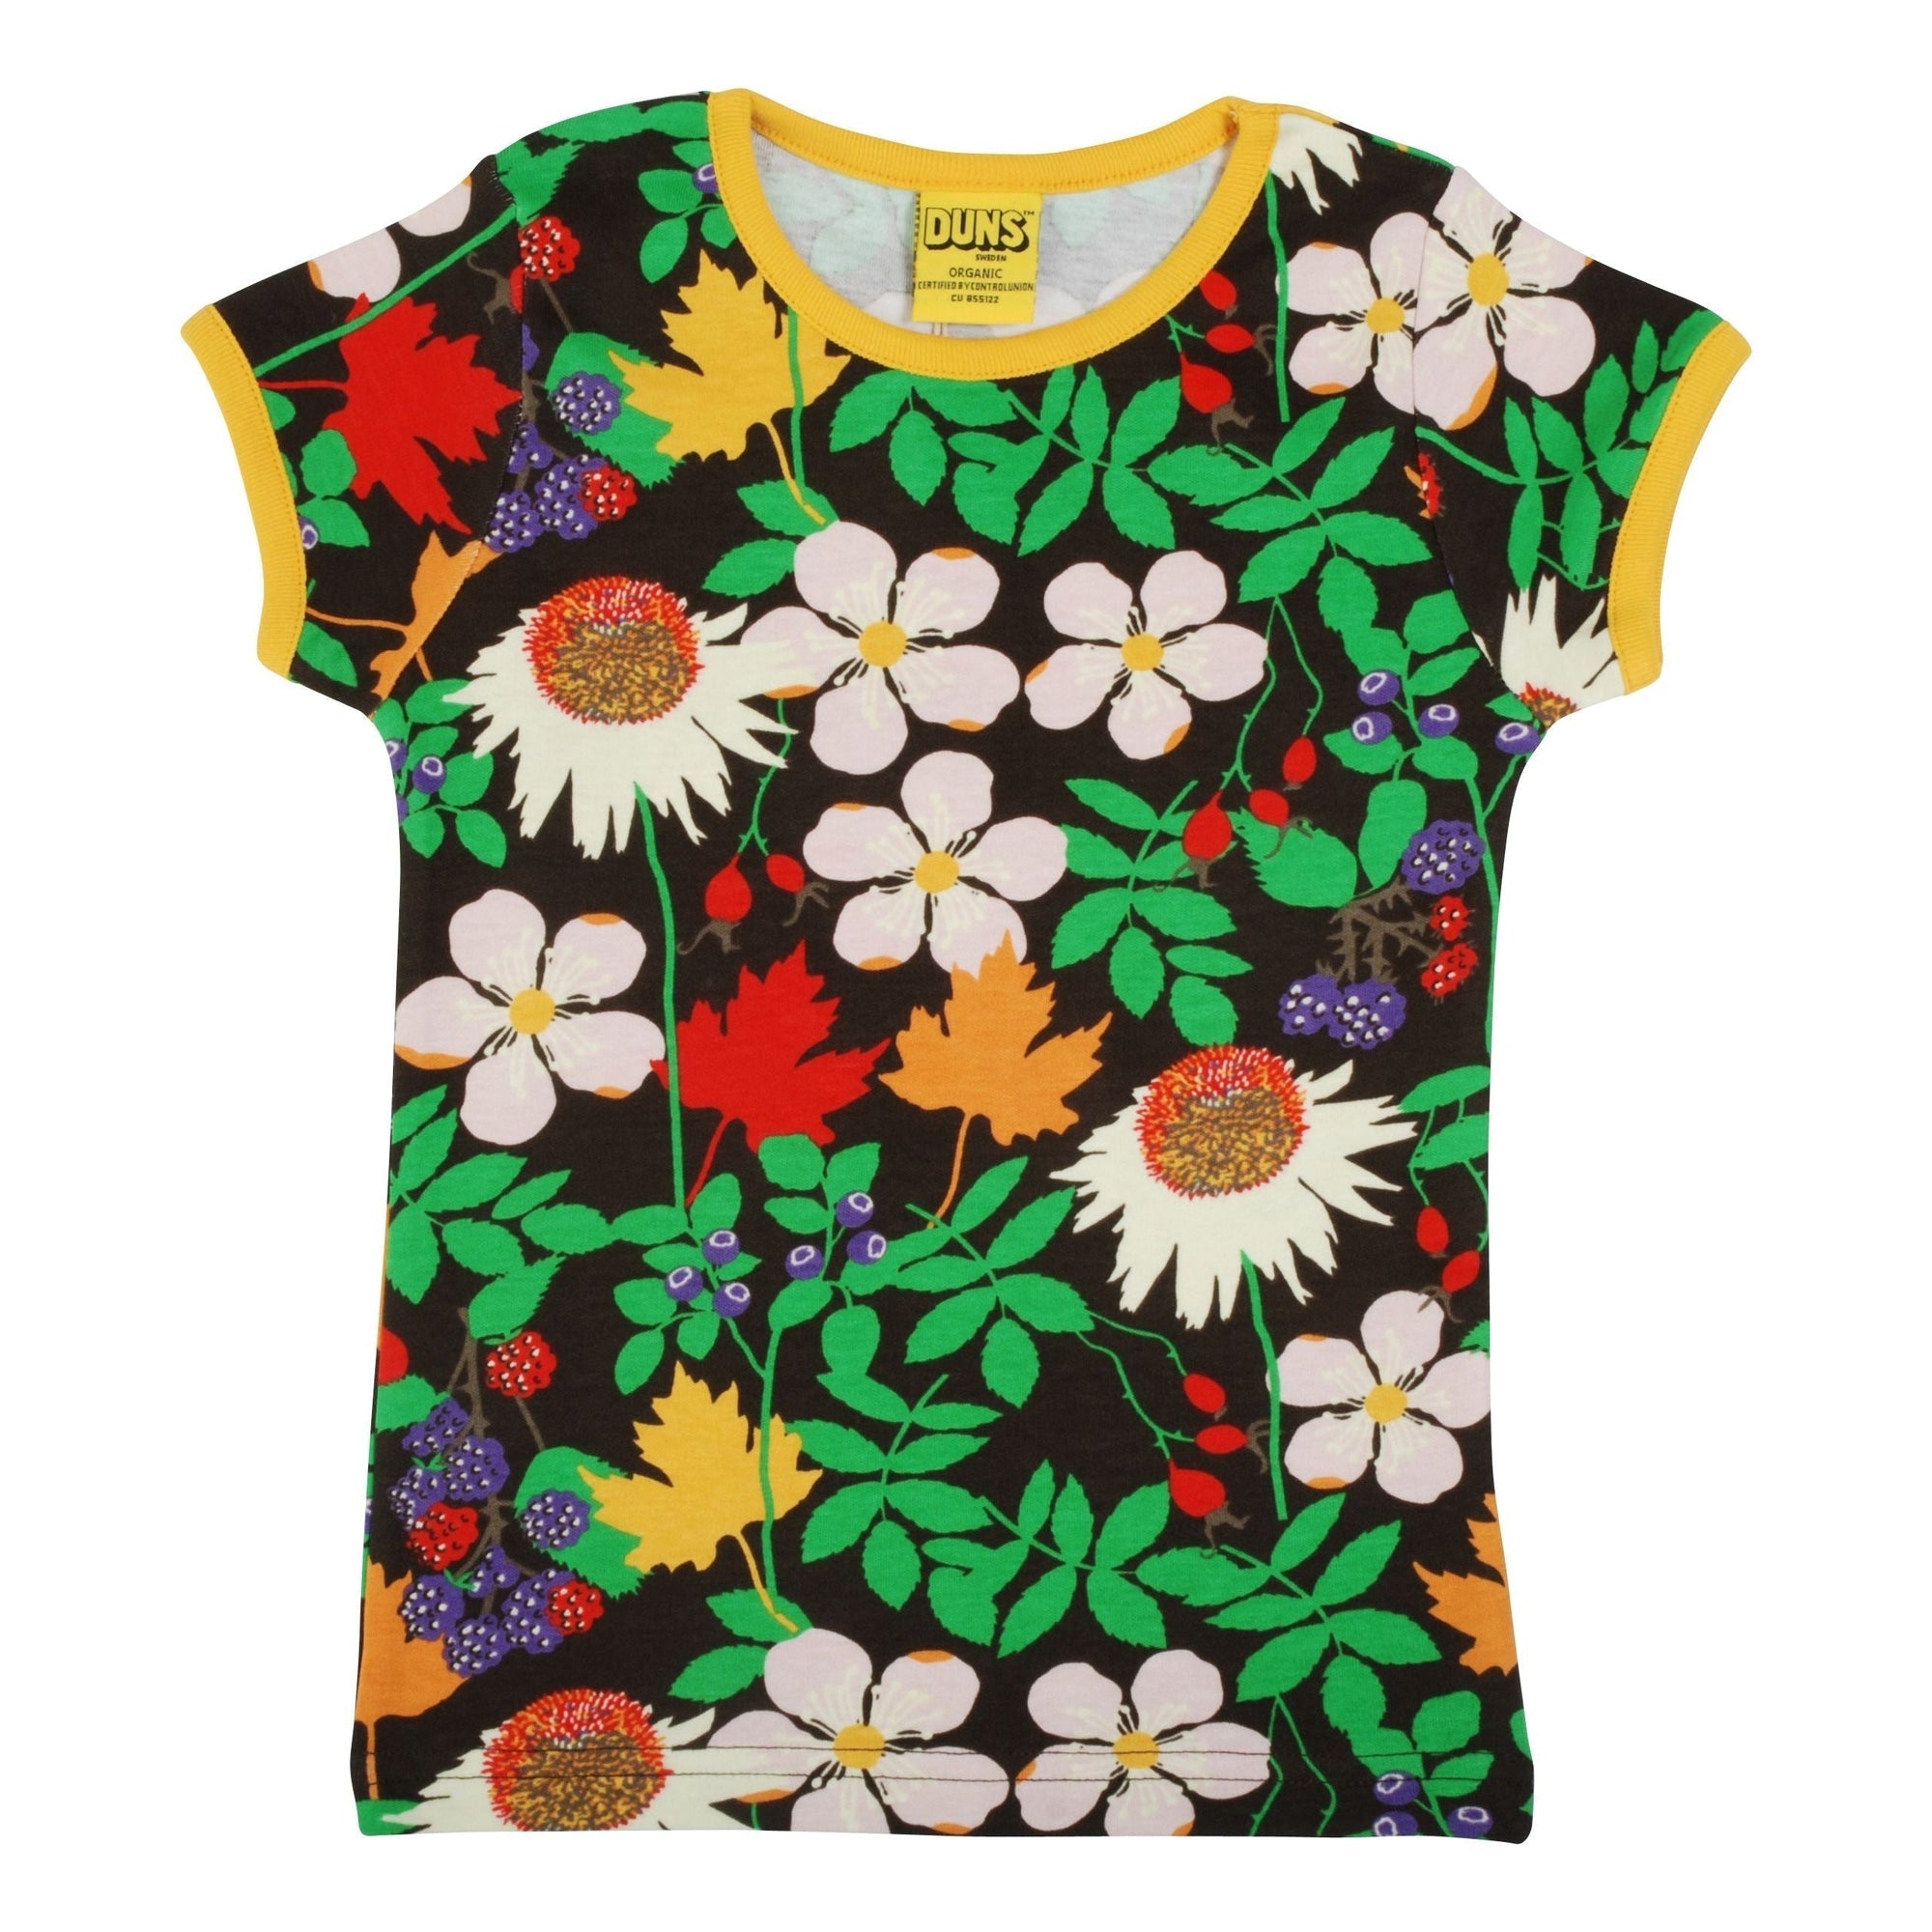 Autumn Flowers - Brown Short Sleeve Shirt - 1 Left Size 12-18 months-Duns Sweden-Modern Rascals